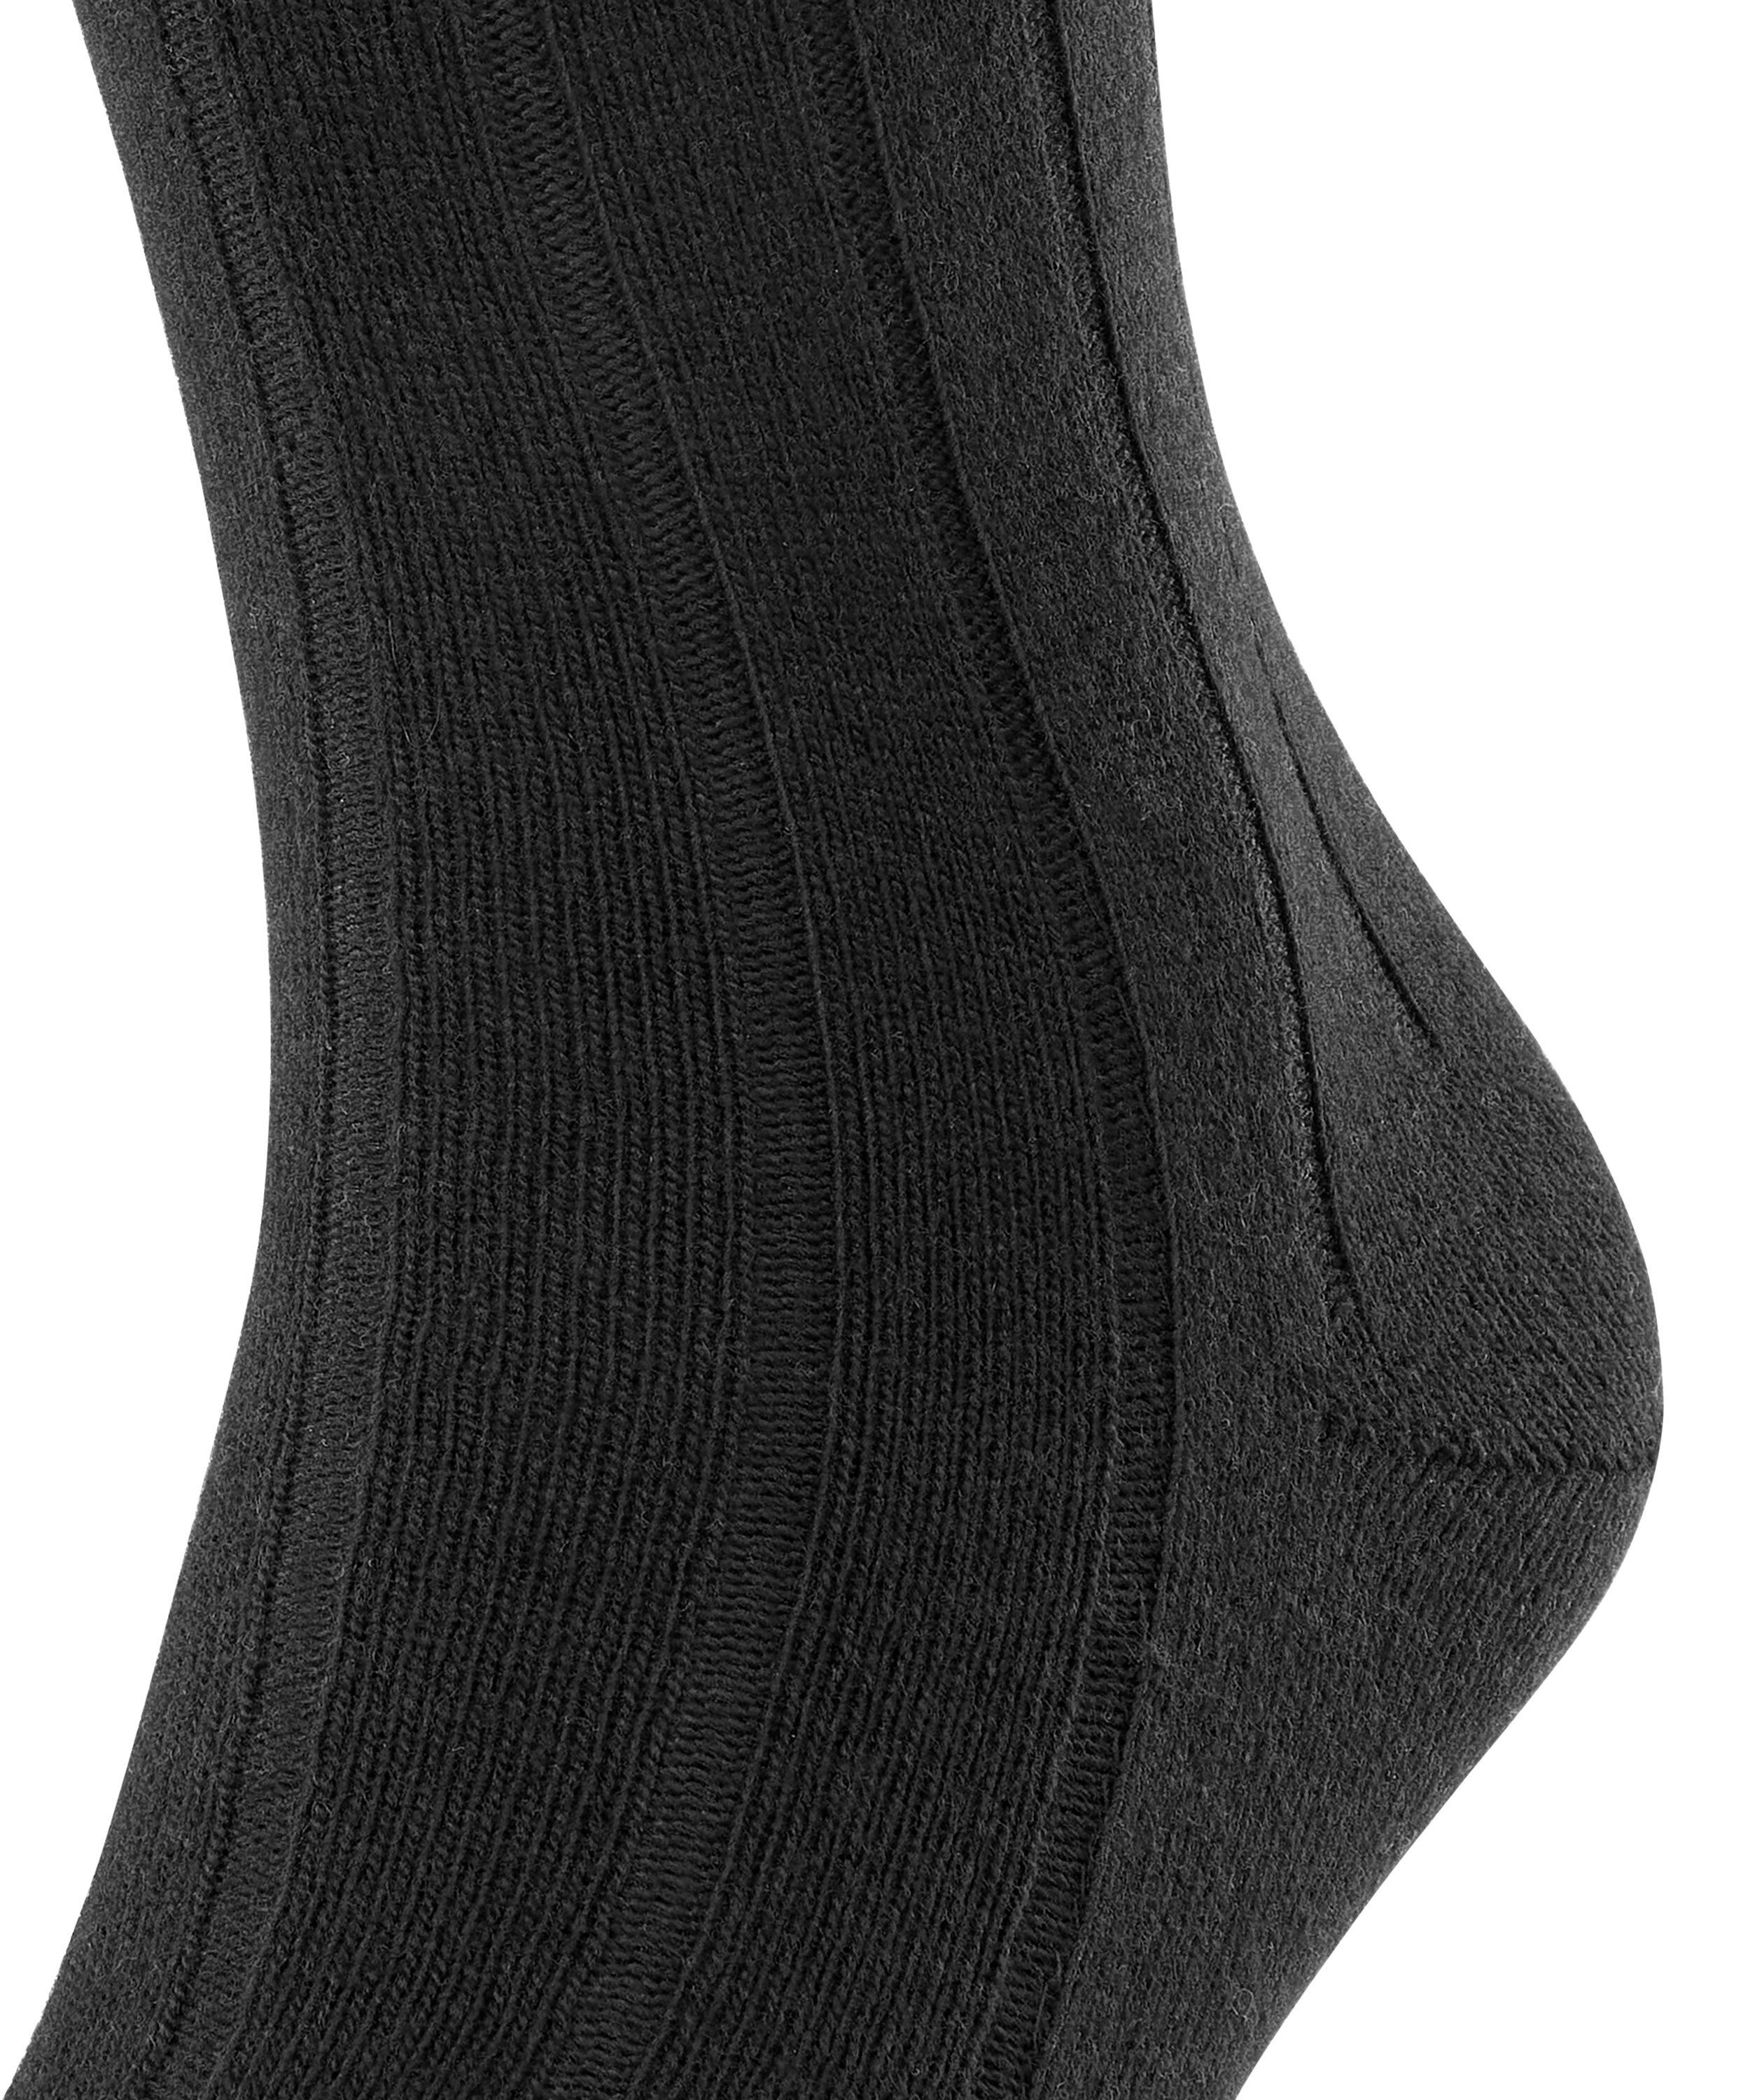 FALKE (3000) Rib Lhasa black Socken (1-Paar)